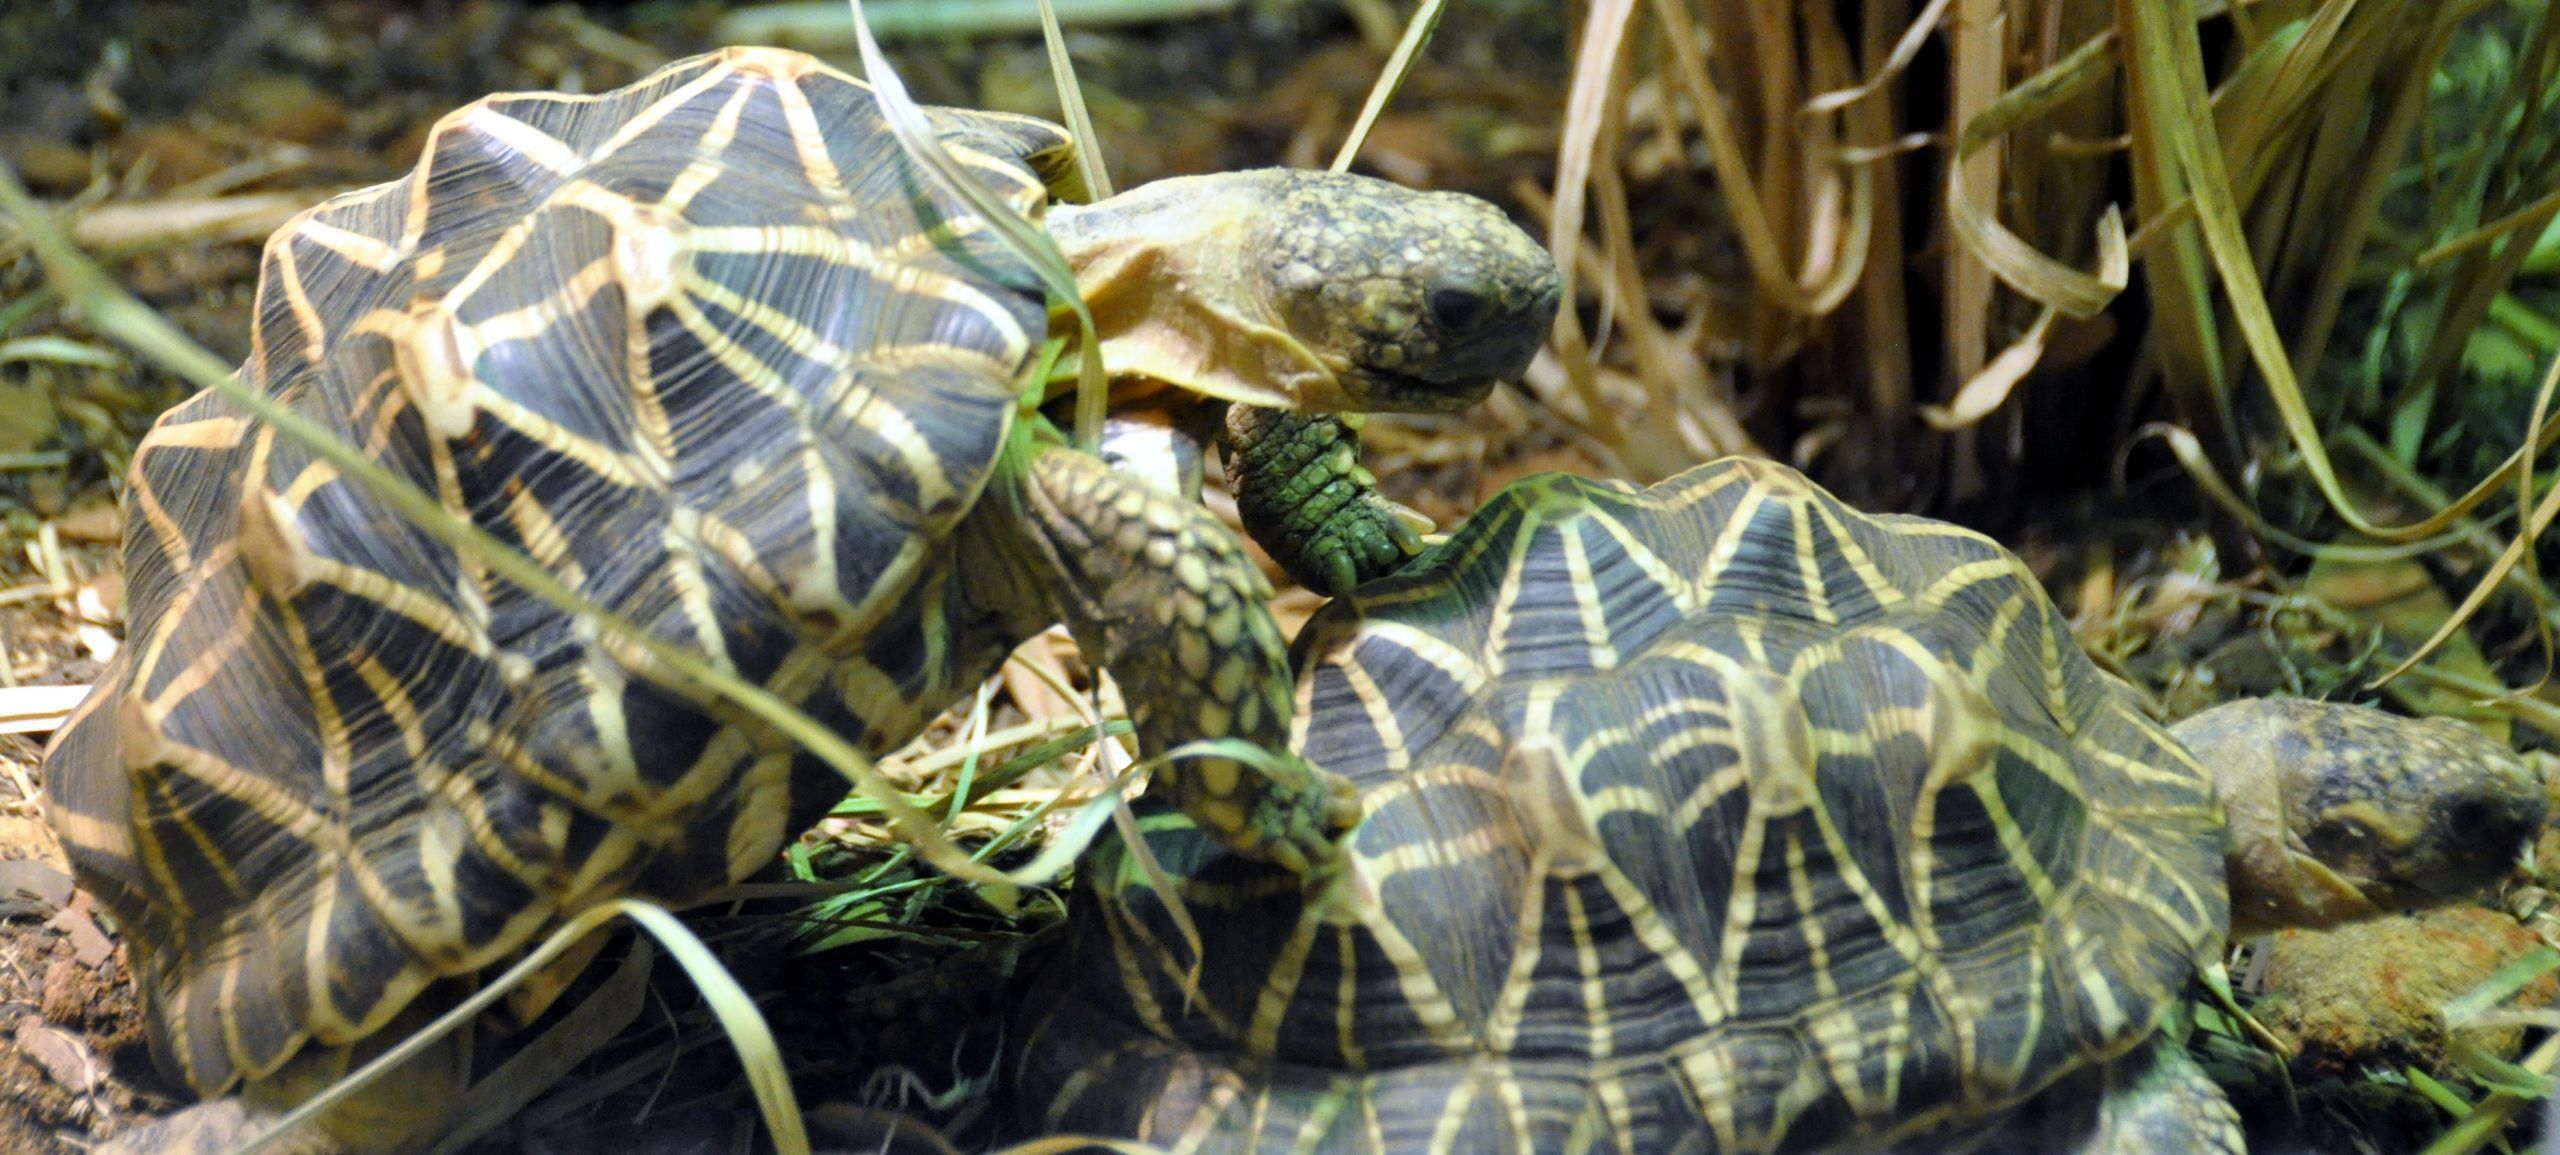 Reproducción tortuga estrellada de la india